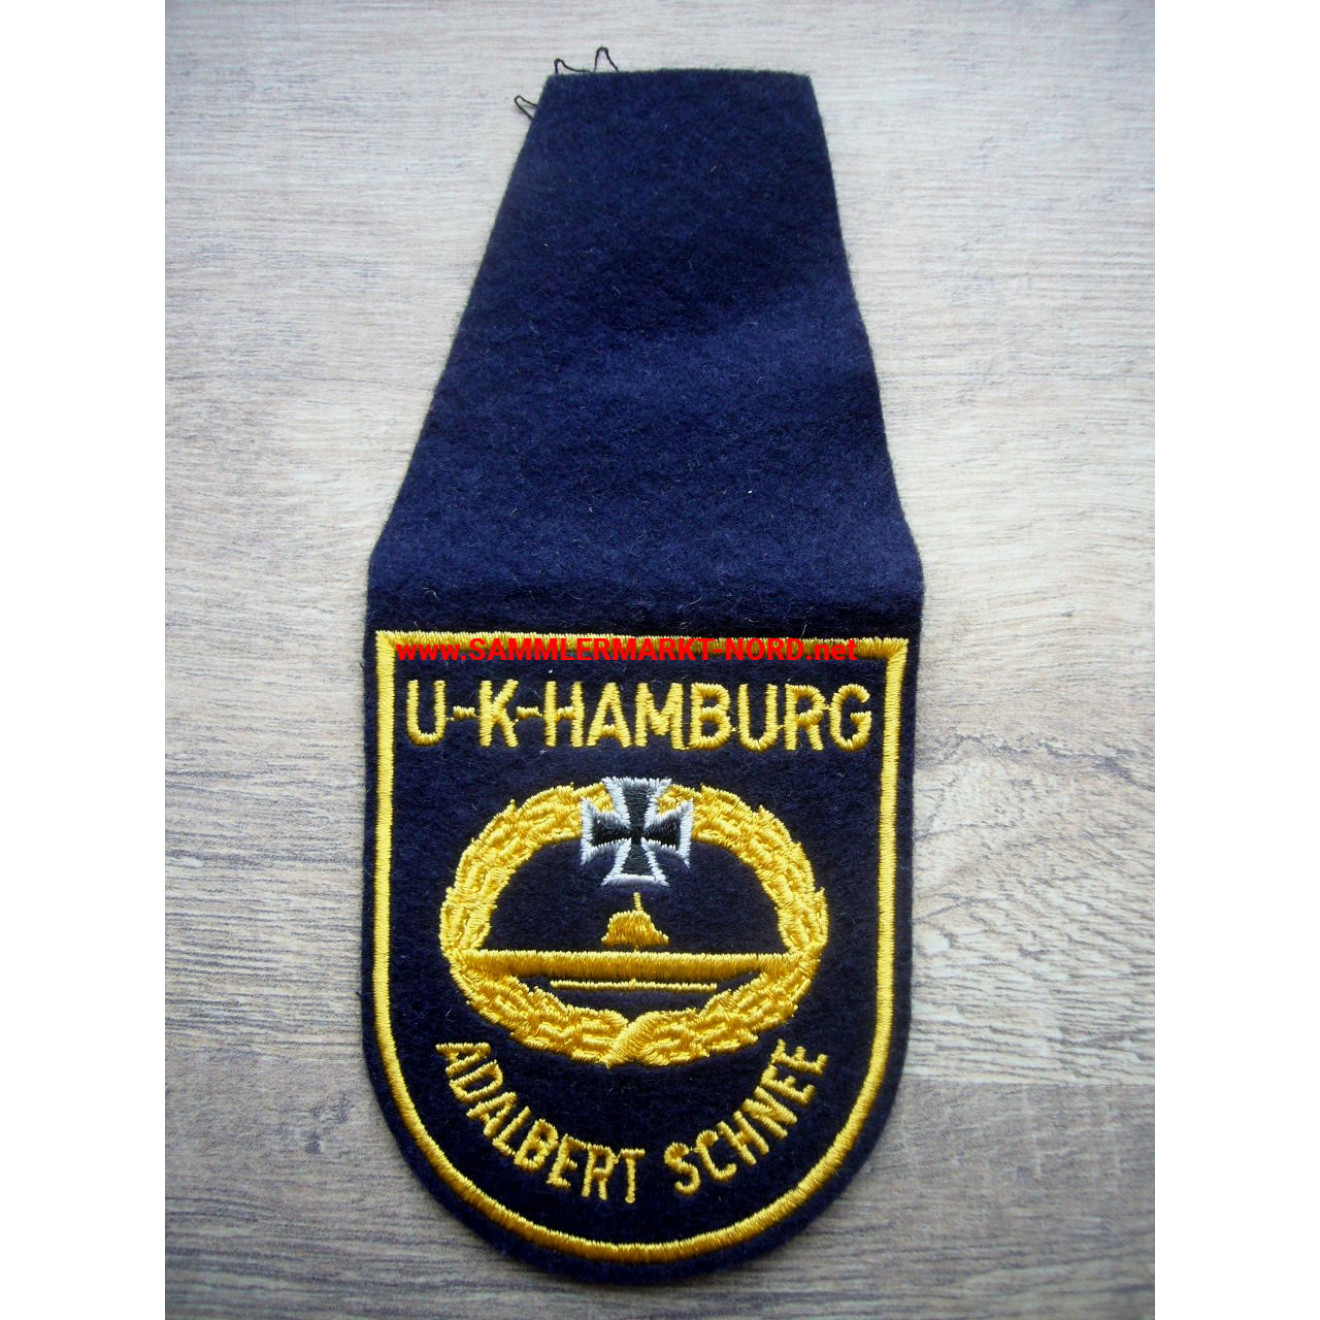 U-Boot Kameradschaft Hamburg "Adalbert Schnee" - Uniformabzeichen